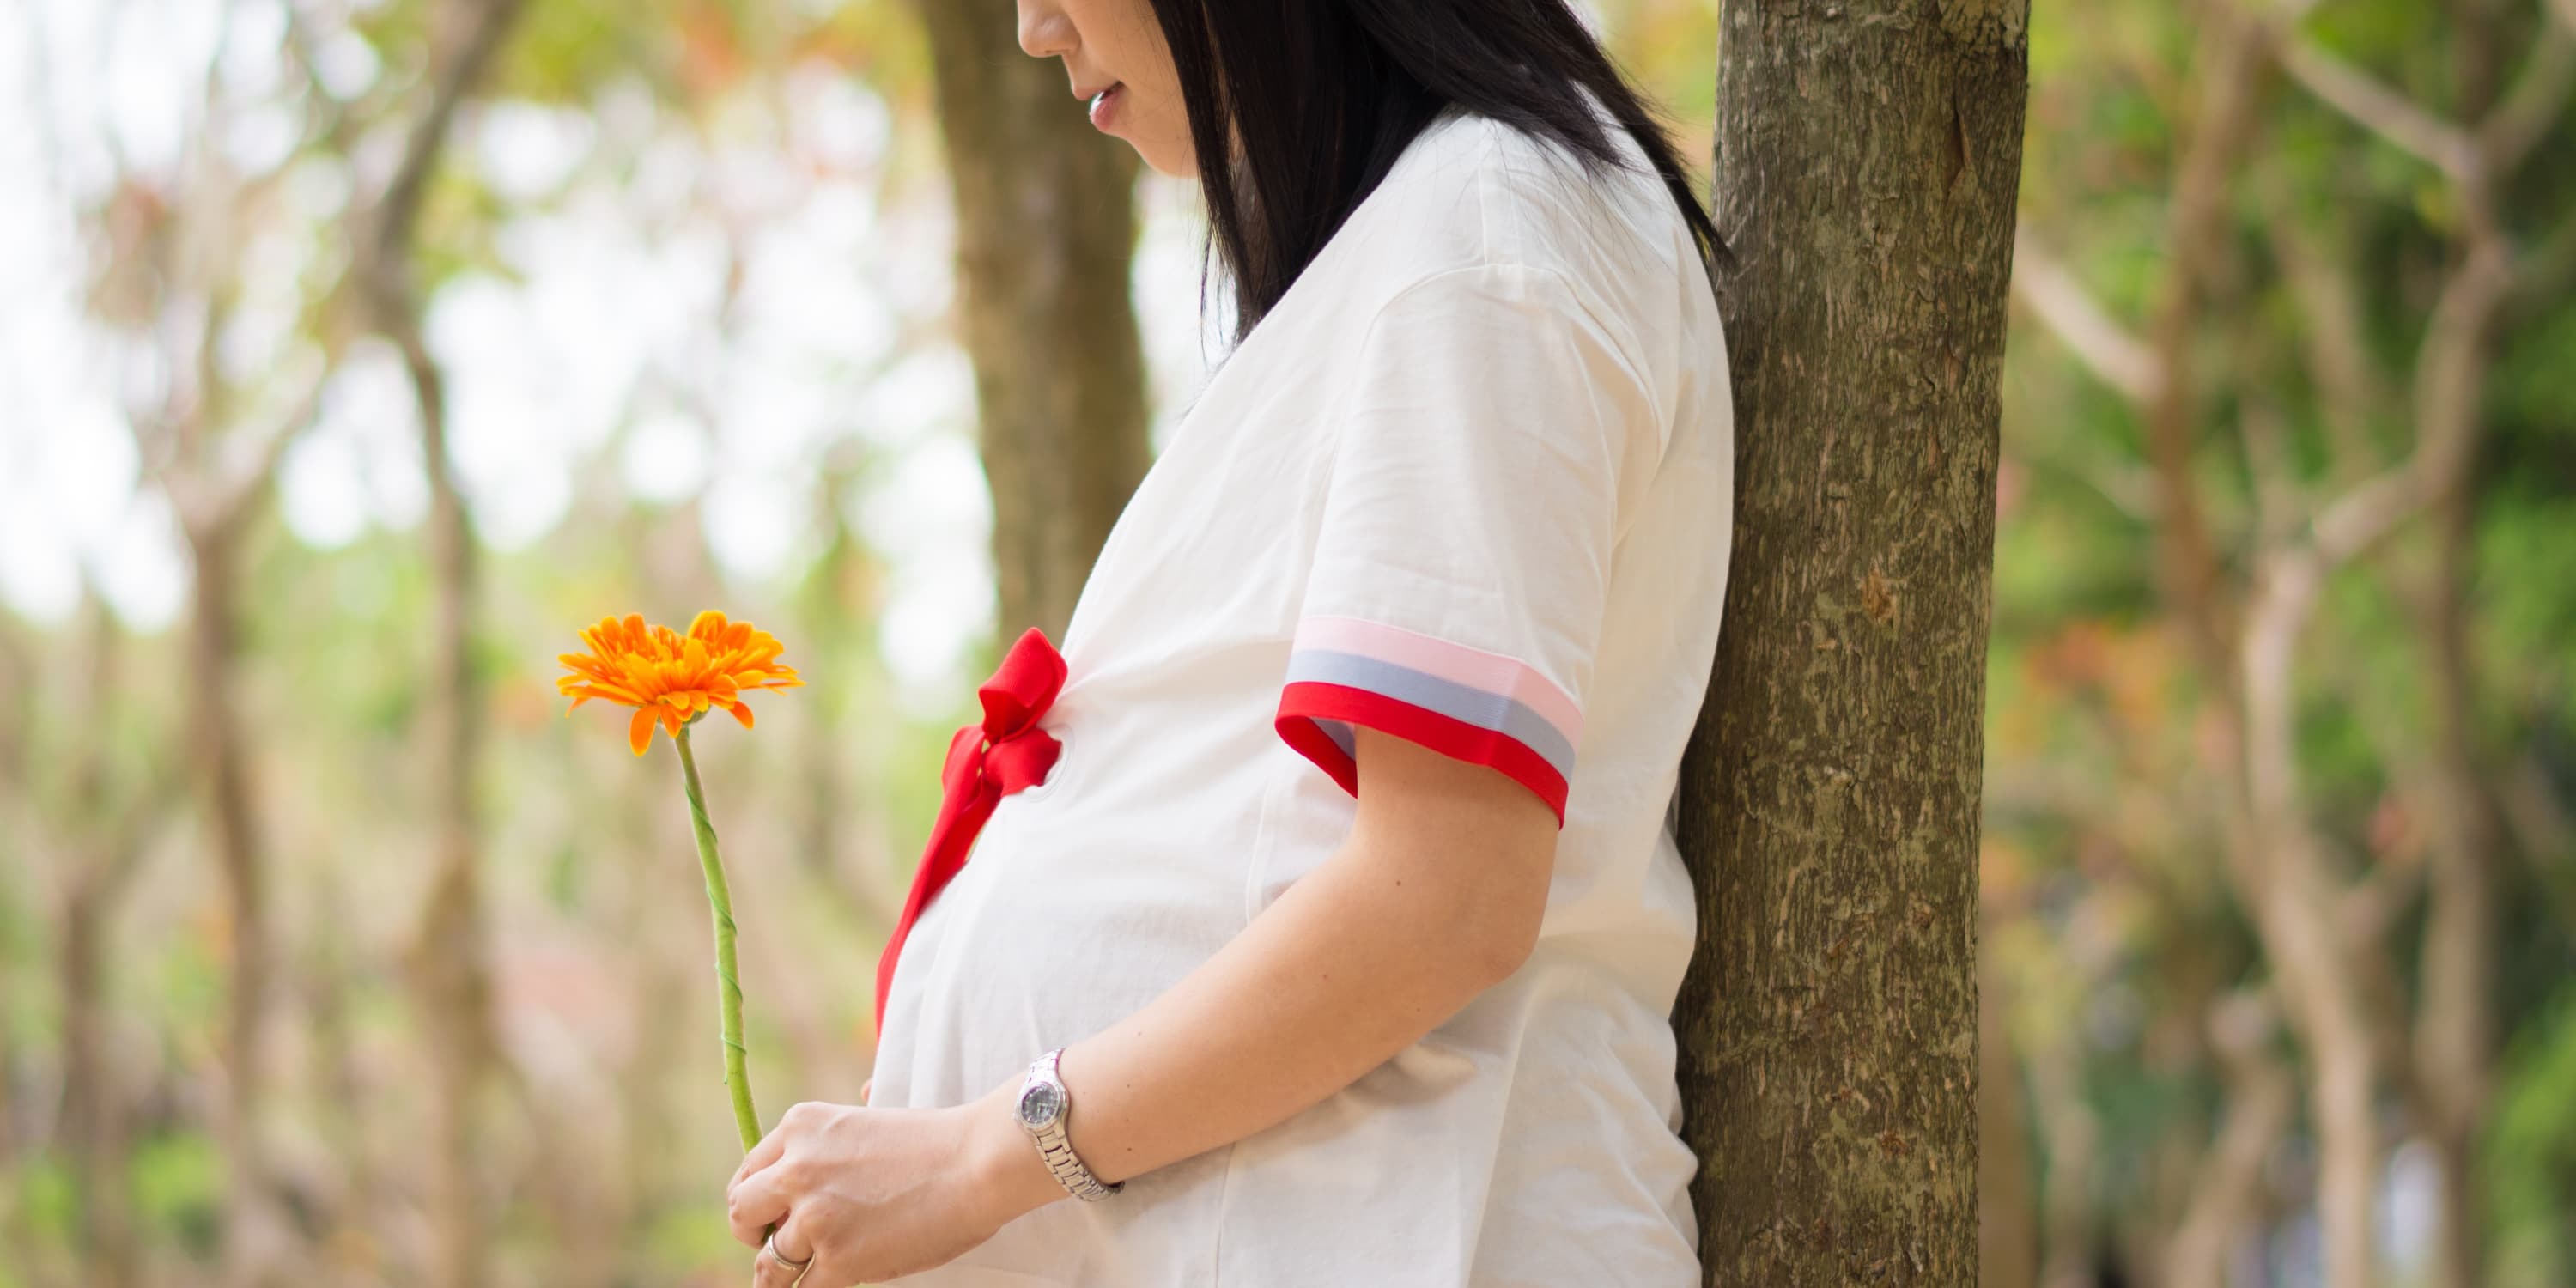 "Une future maman se tient sous un arbre, de profil, et tient entre ses mains une fleur "